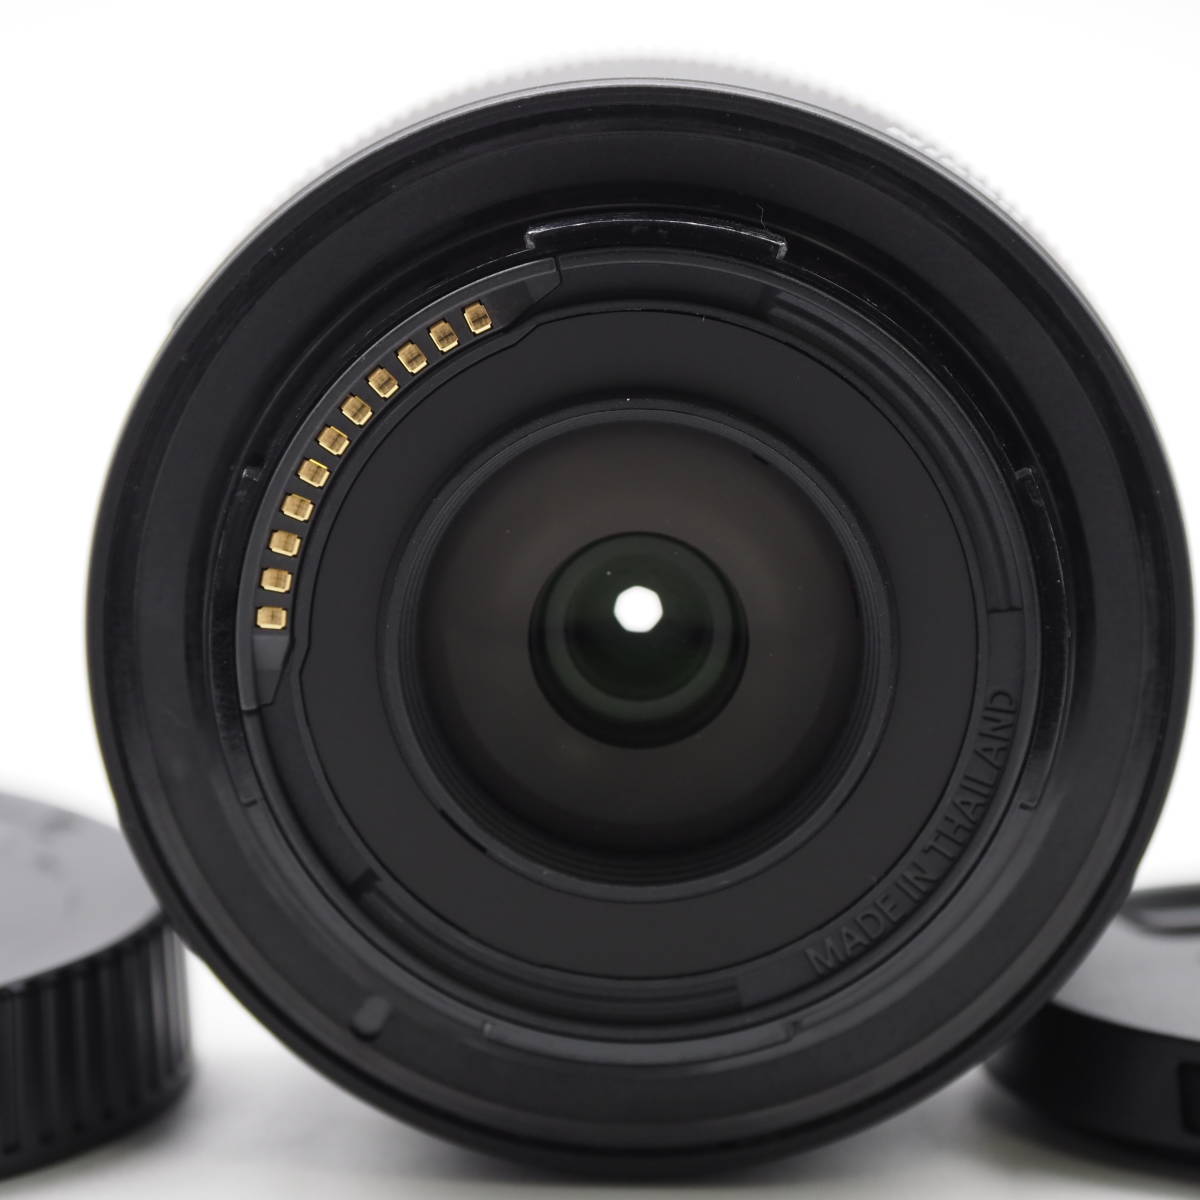  Nikon ニコン 標準ズームレンズ NIKKOR Z DX 16-50mm f/3.5-6.3 VR Zマウント DXレンズ NZDXVR16-50 ブラック #2609_画像5